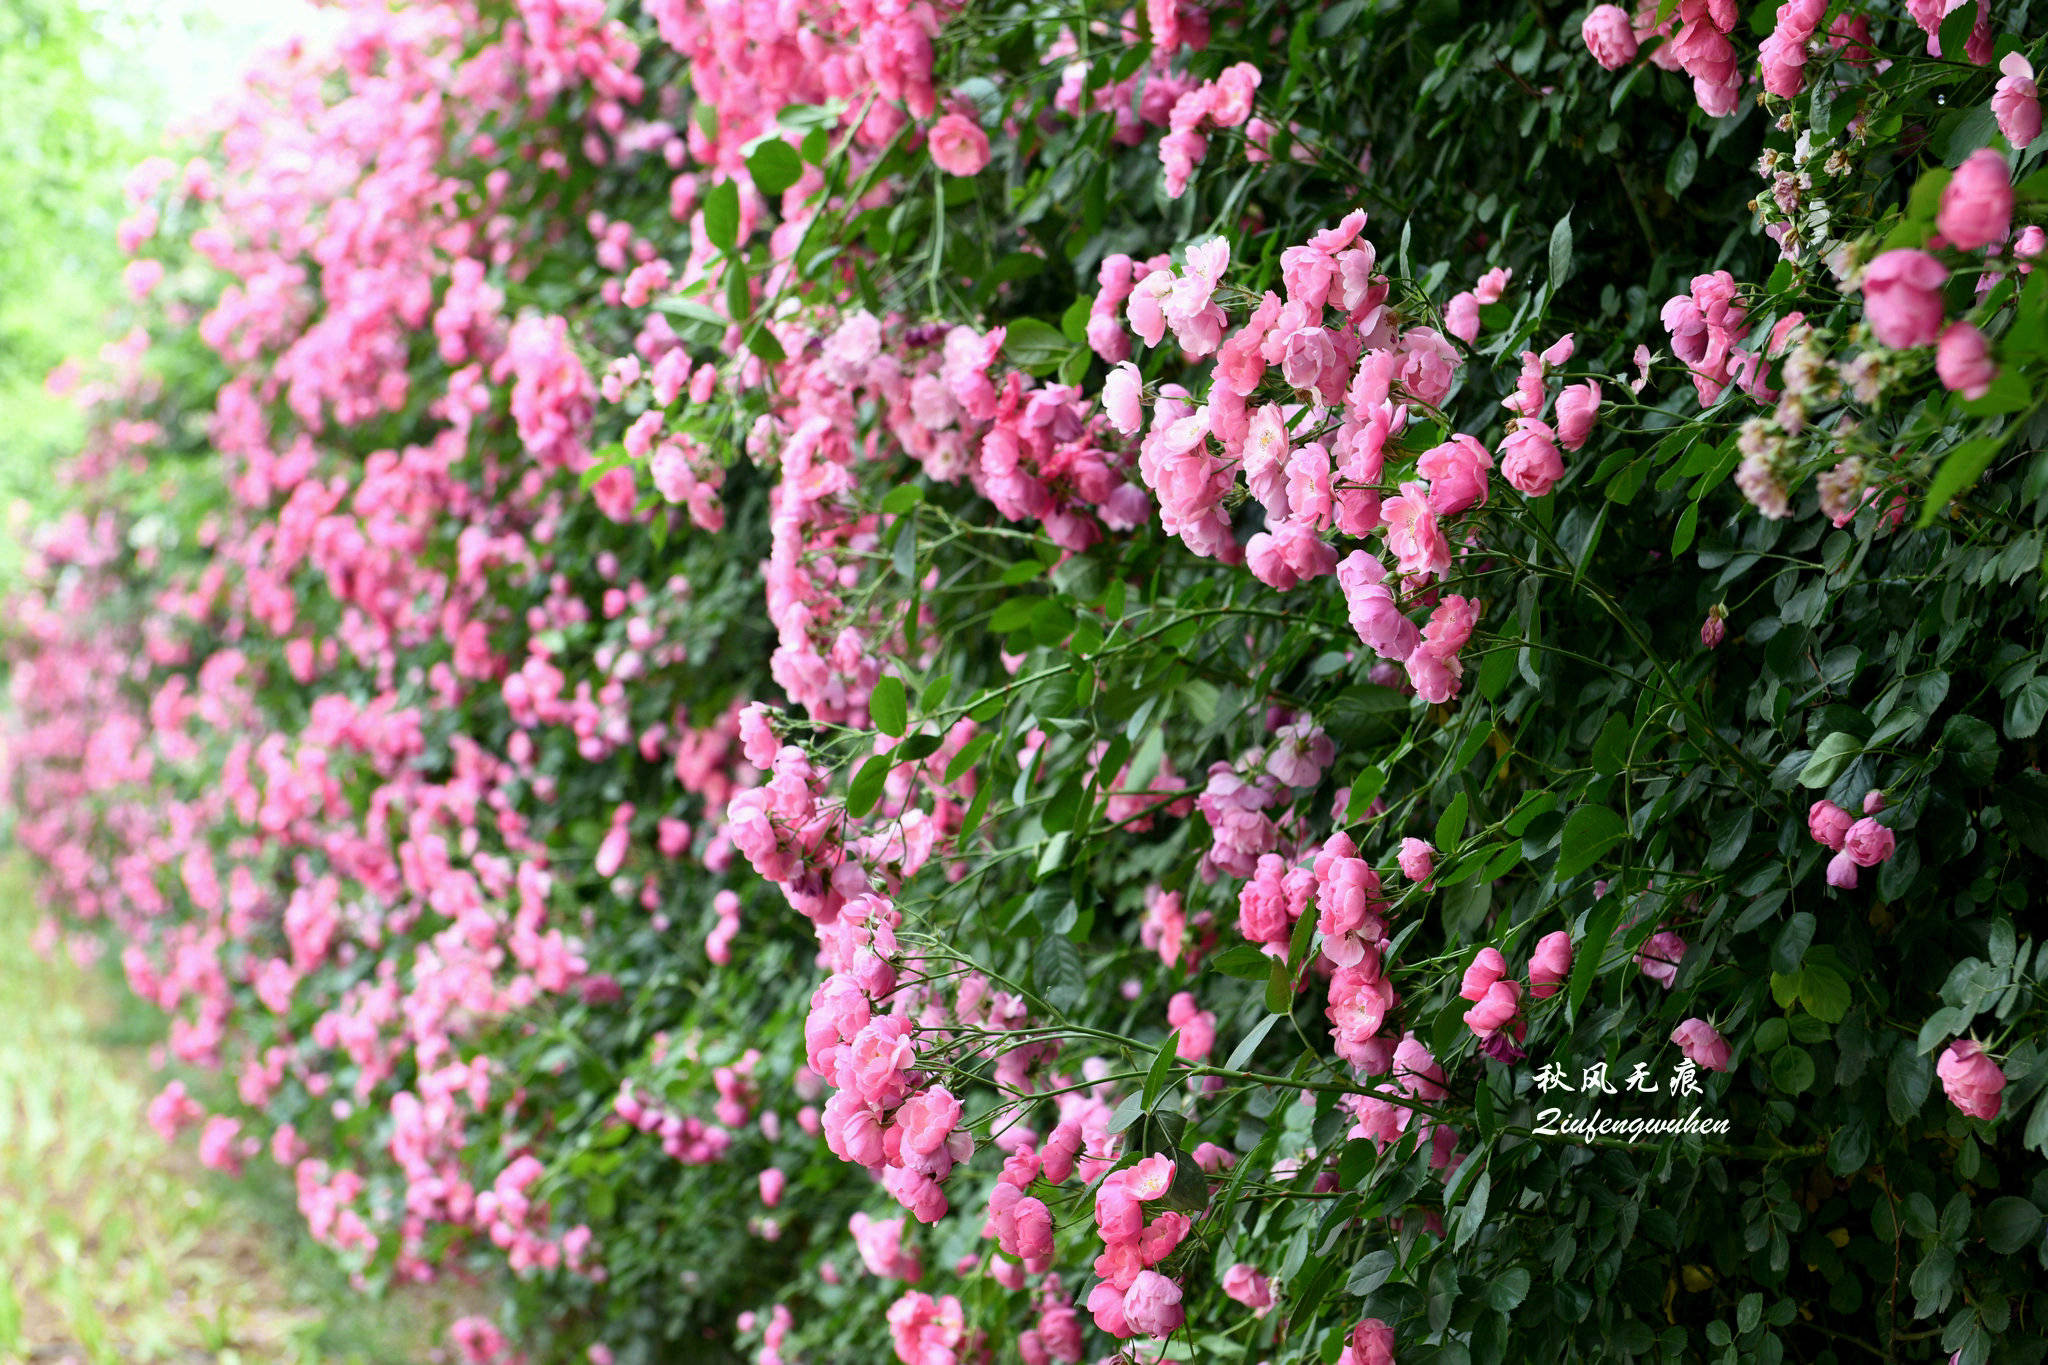 夏风世博园的锦绣花意与美丽夕照 花儿